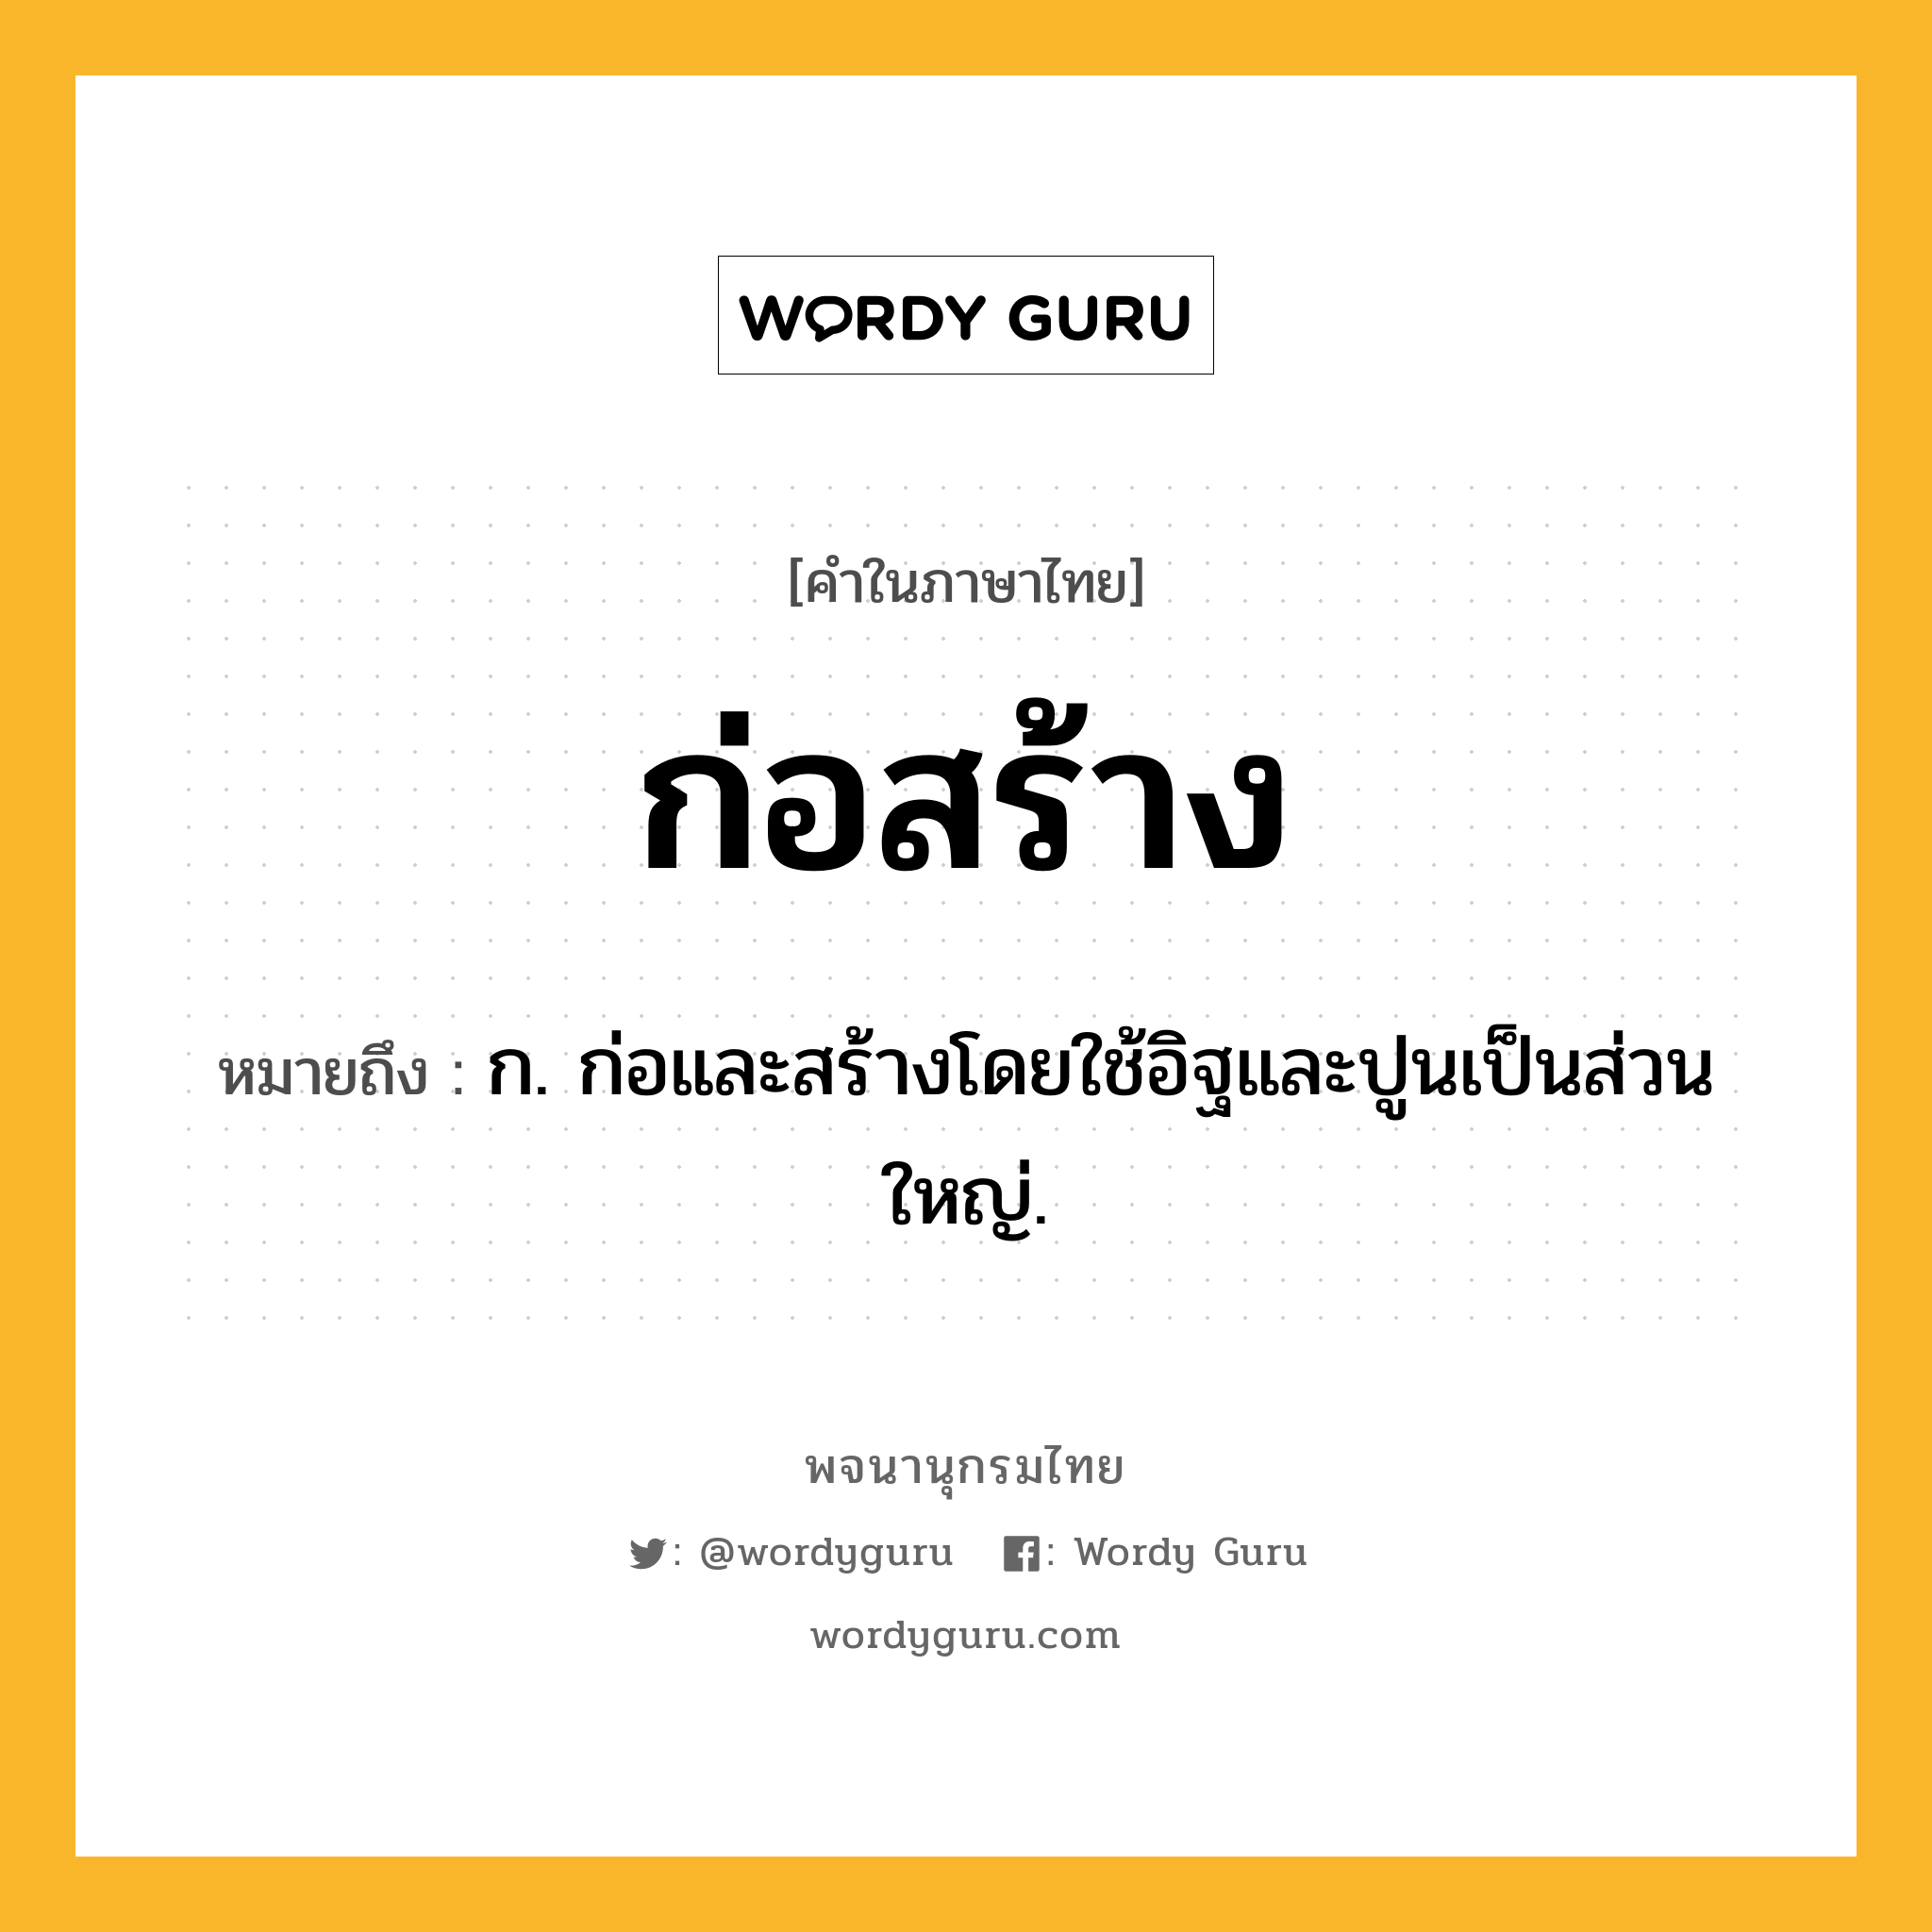 ก่อสร้าง ความหมาย หมายถึงอะไร?, คำในภาษาไทย ก่อสร้าง หมายถึง ก. ก่อและสร้างโดยใช้อิฐและปูนเป็นส่วนใหญ่.